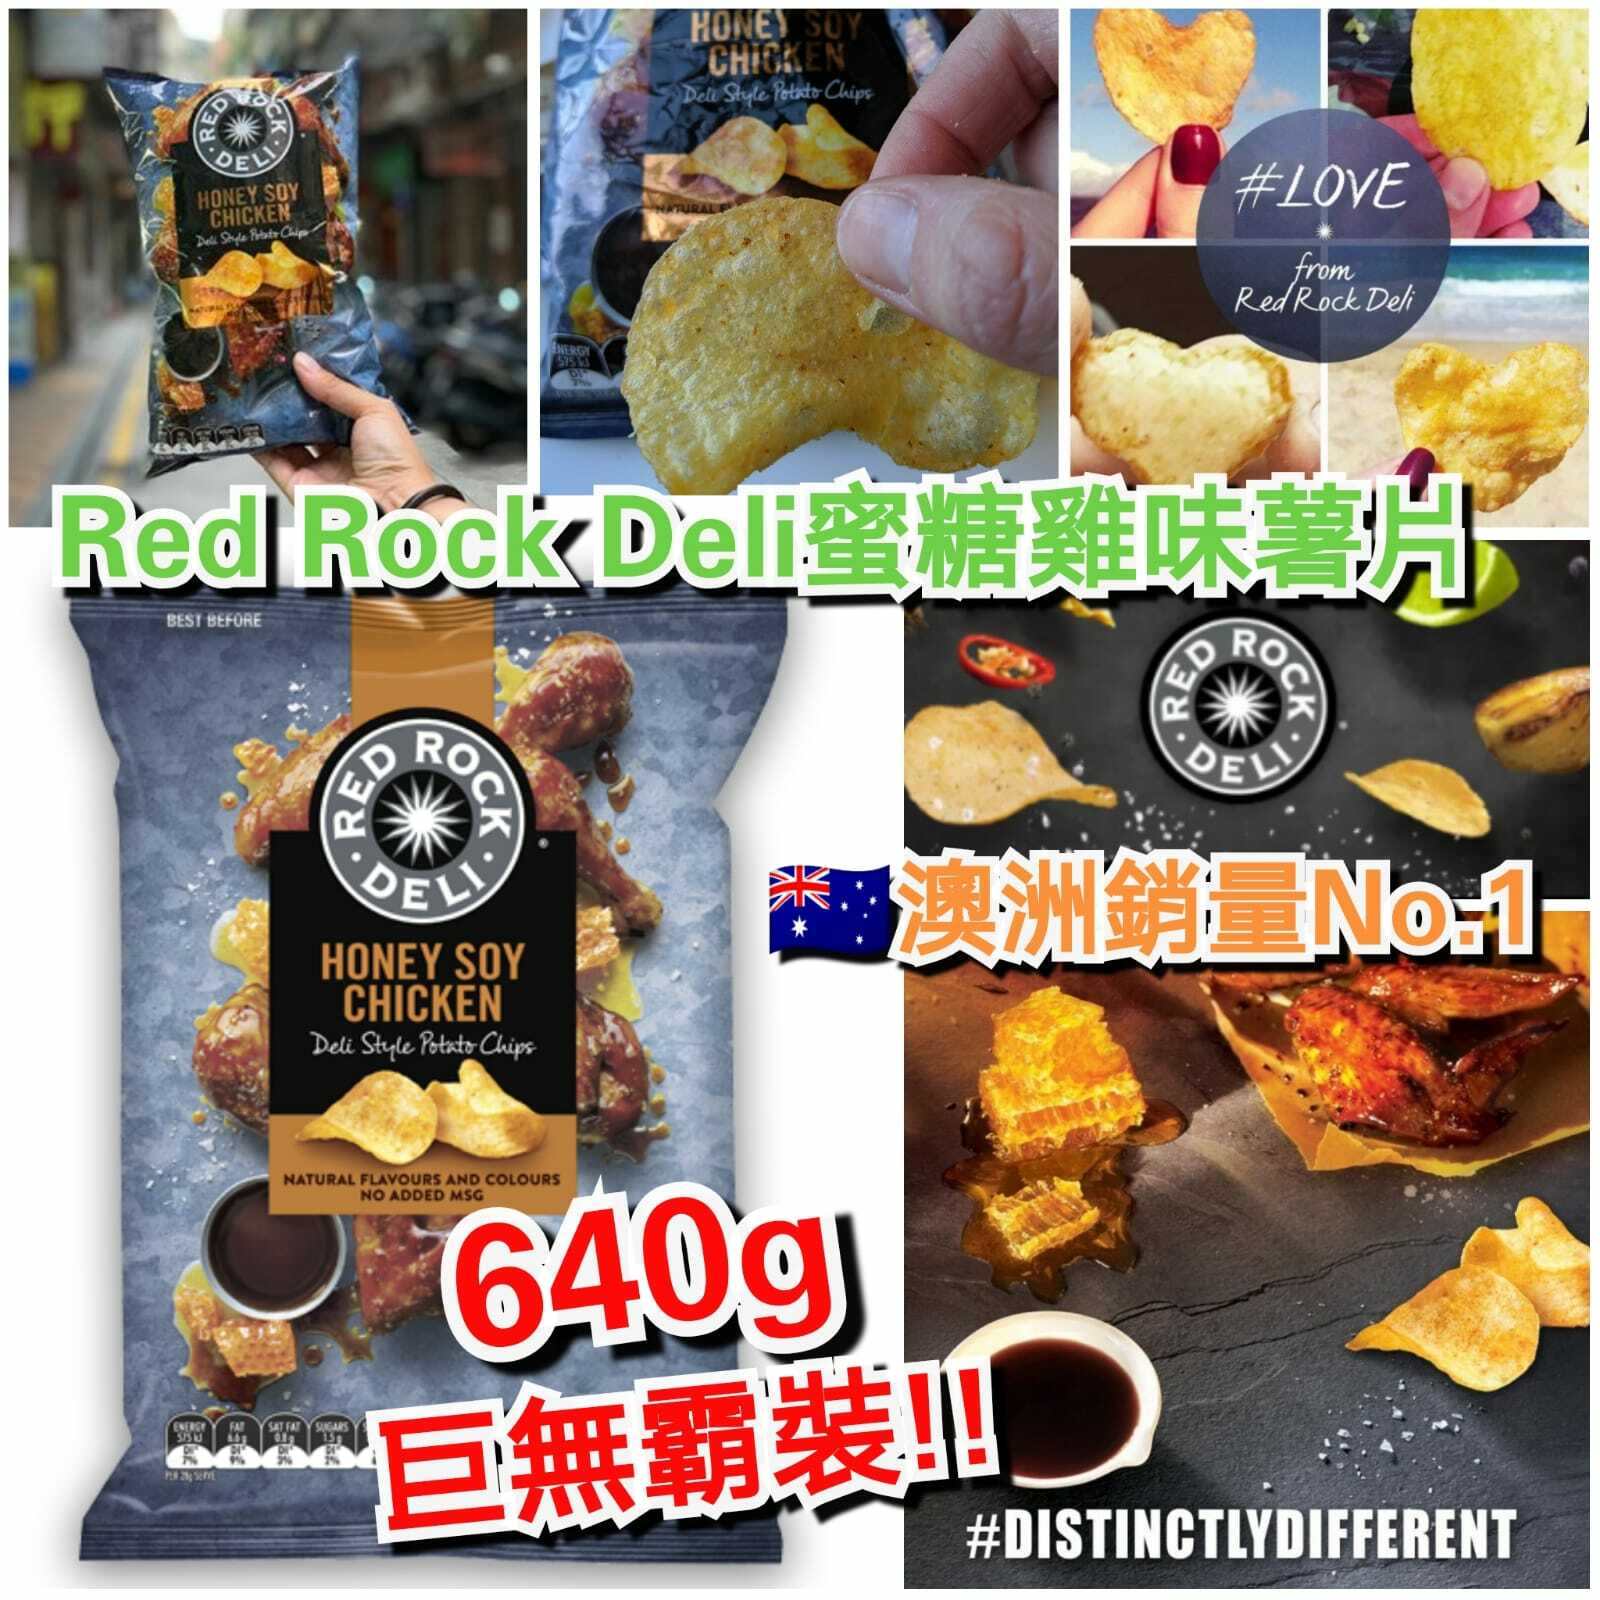 澳洲Red Rock Deil巨無霸薯片(640g)